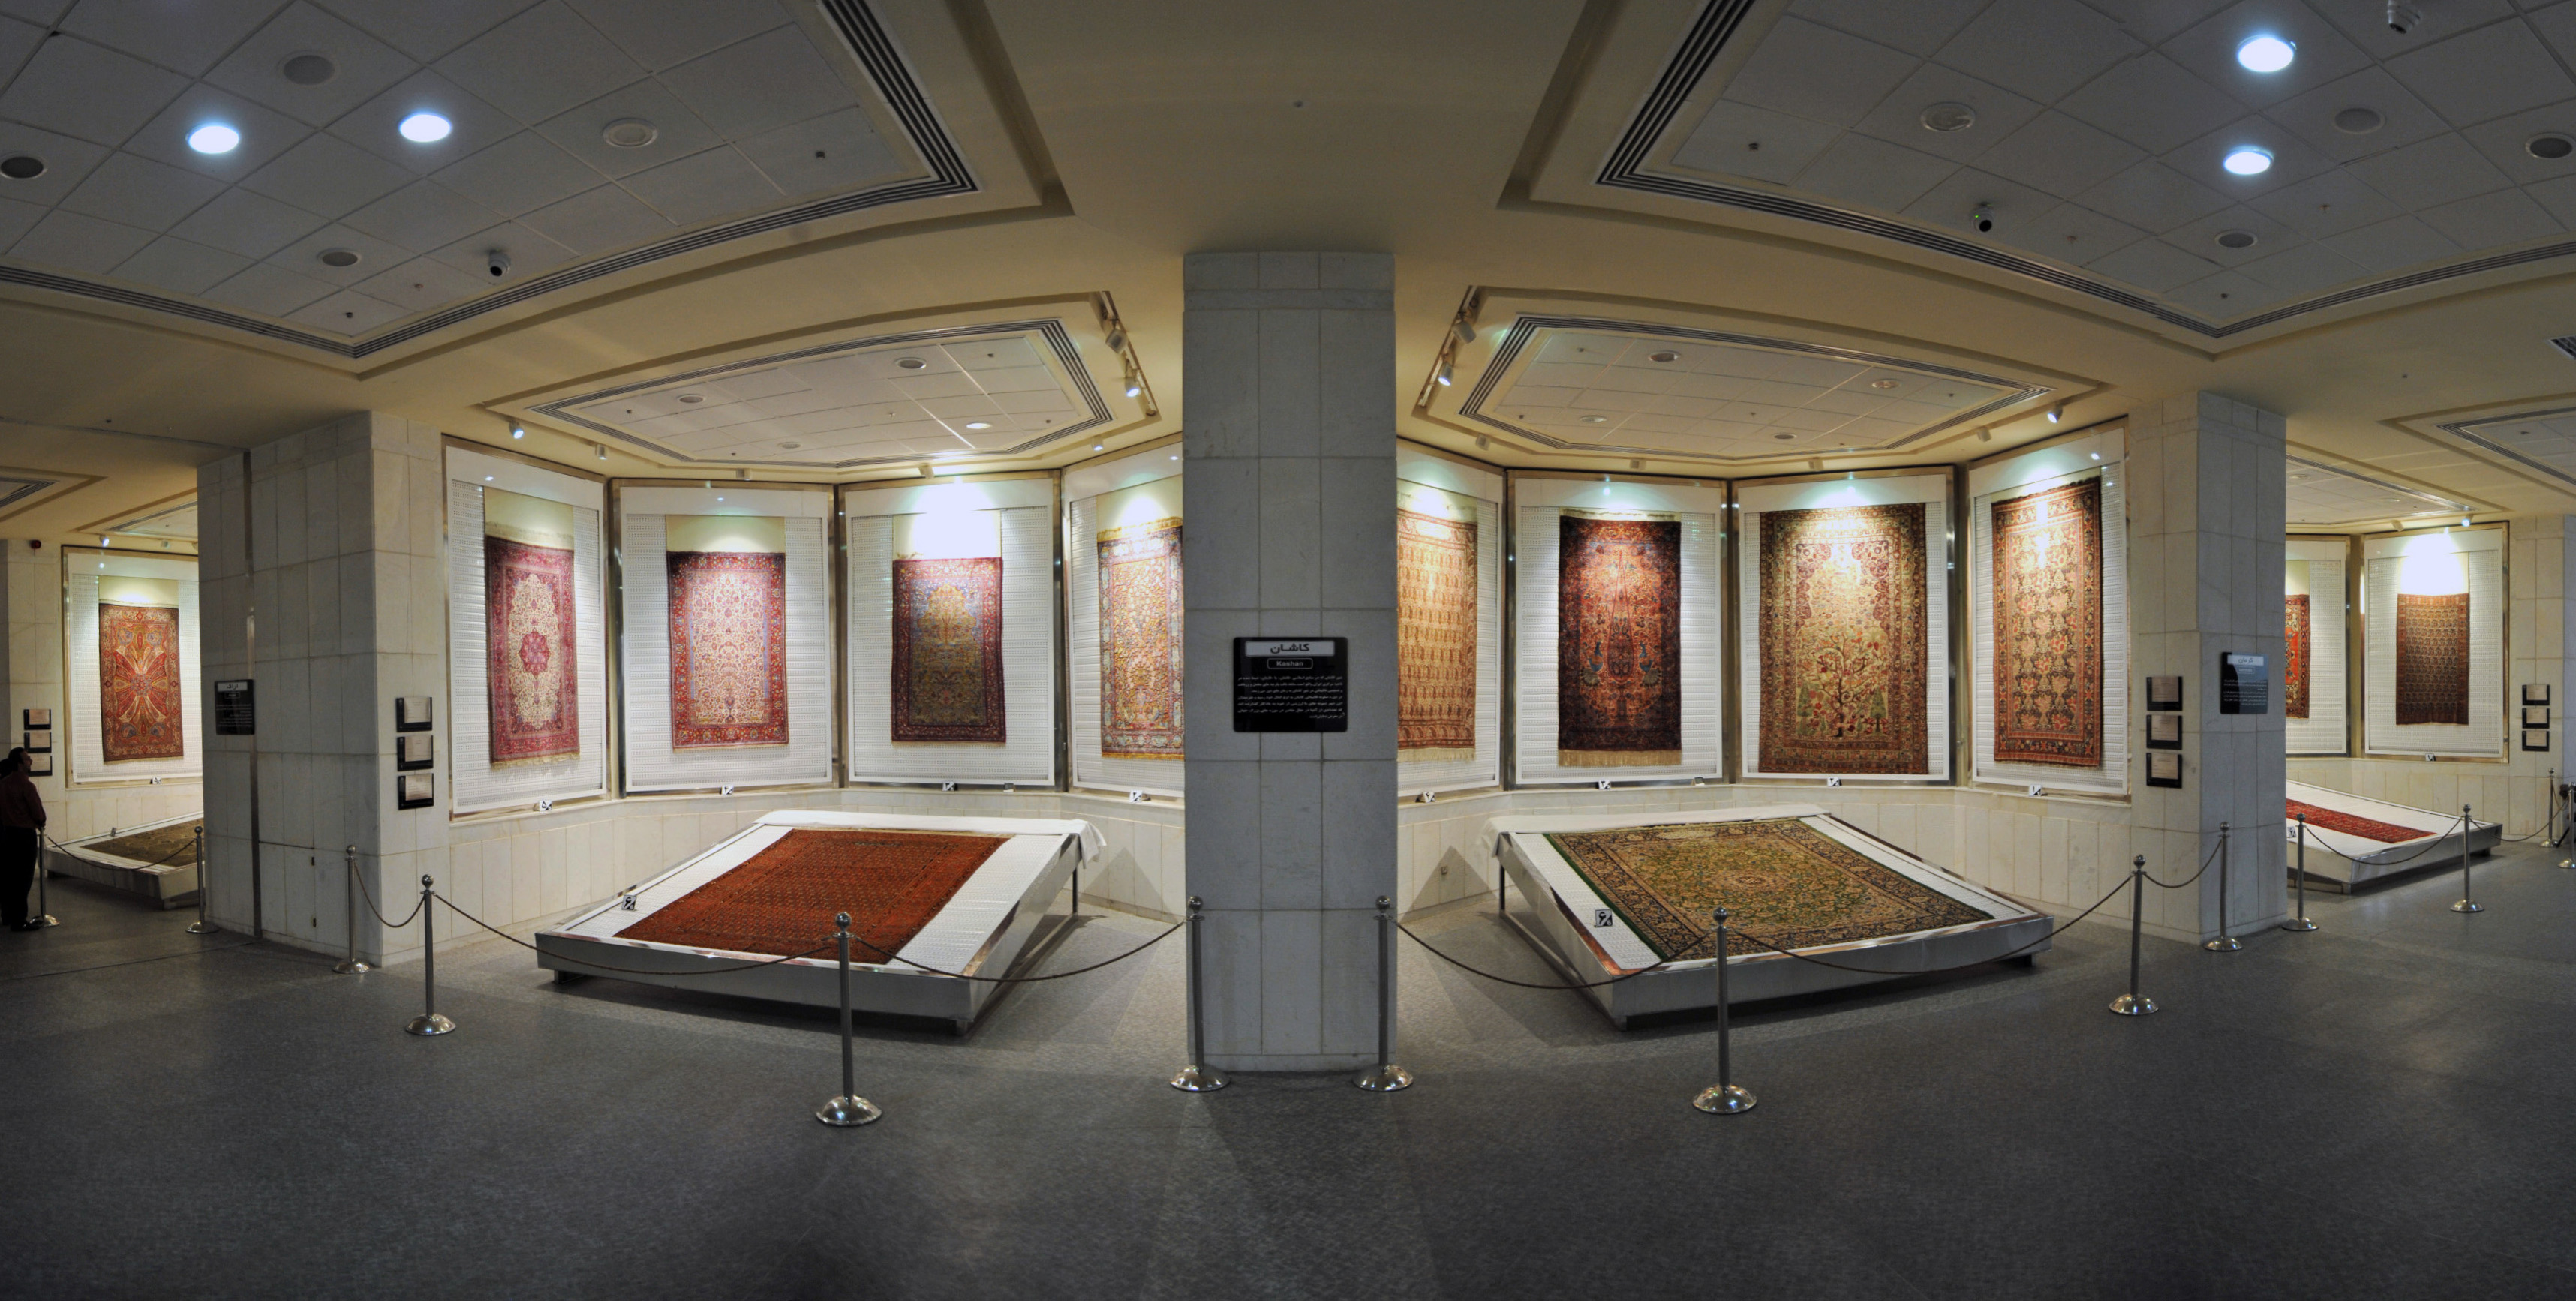 موزه فرش آستان قدس رضوی